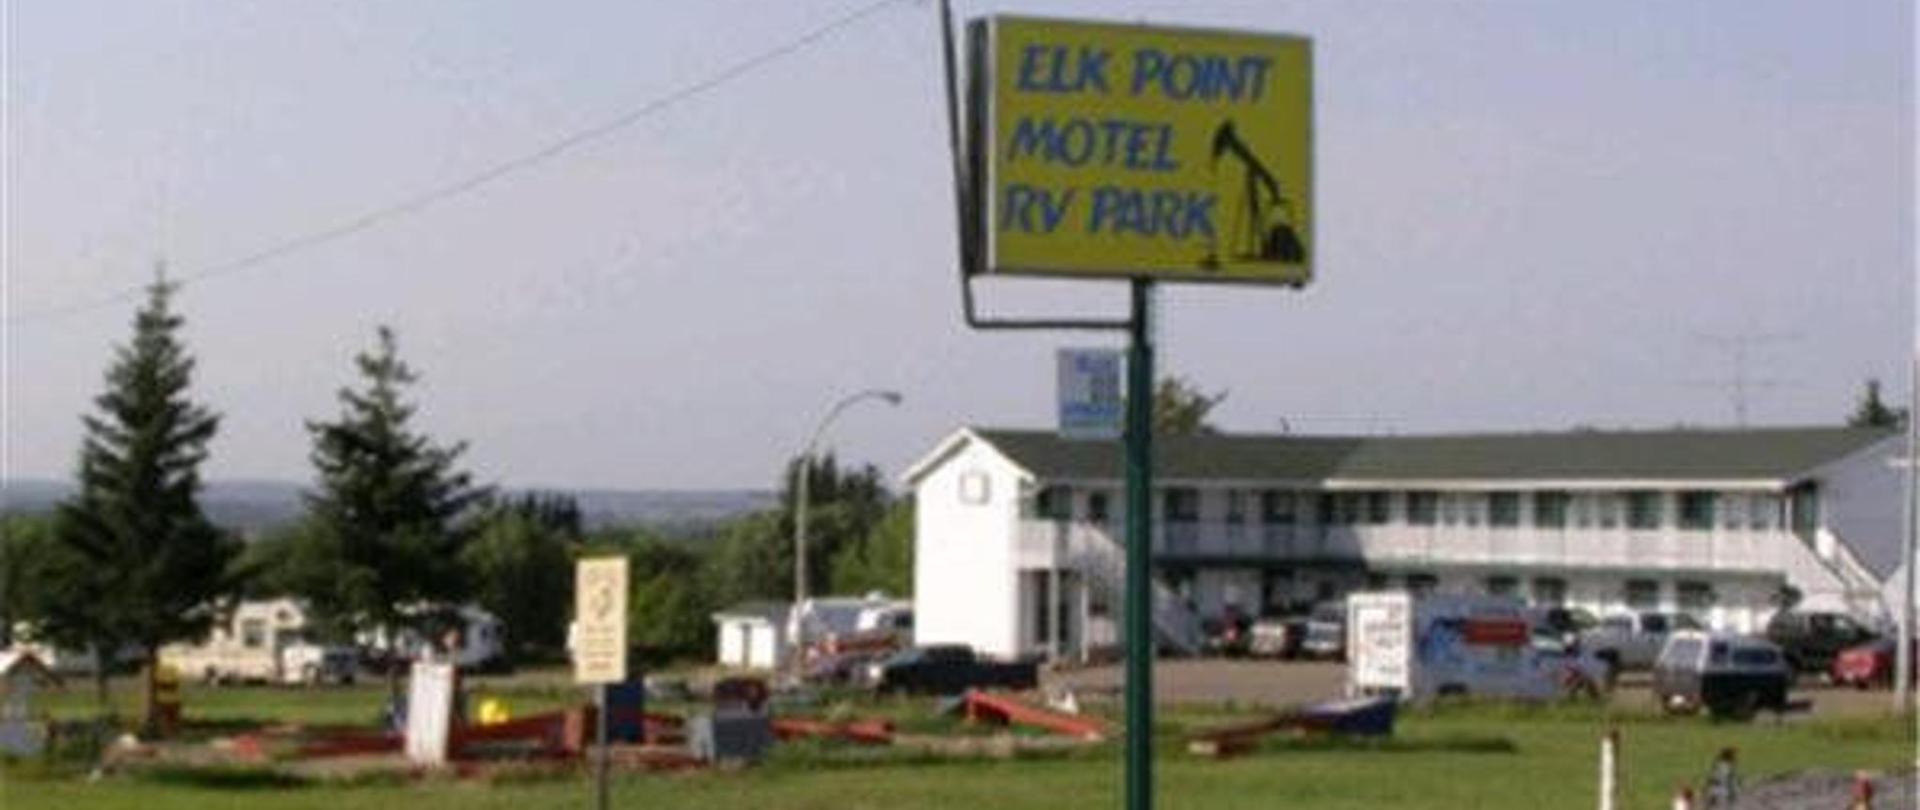 Elk Point Motel & Rv Park logo